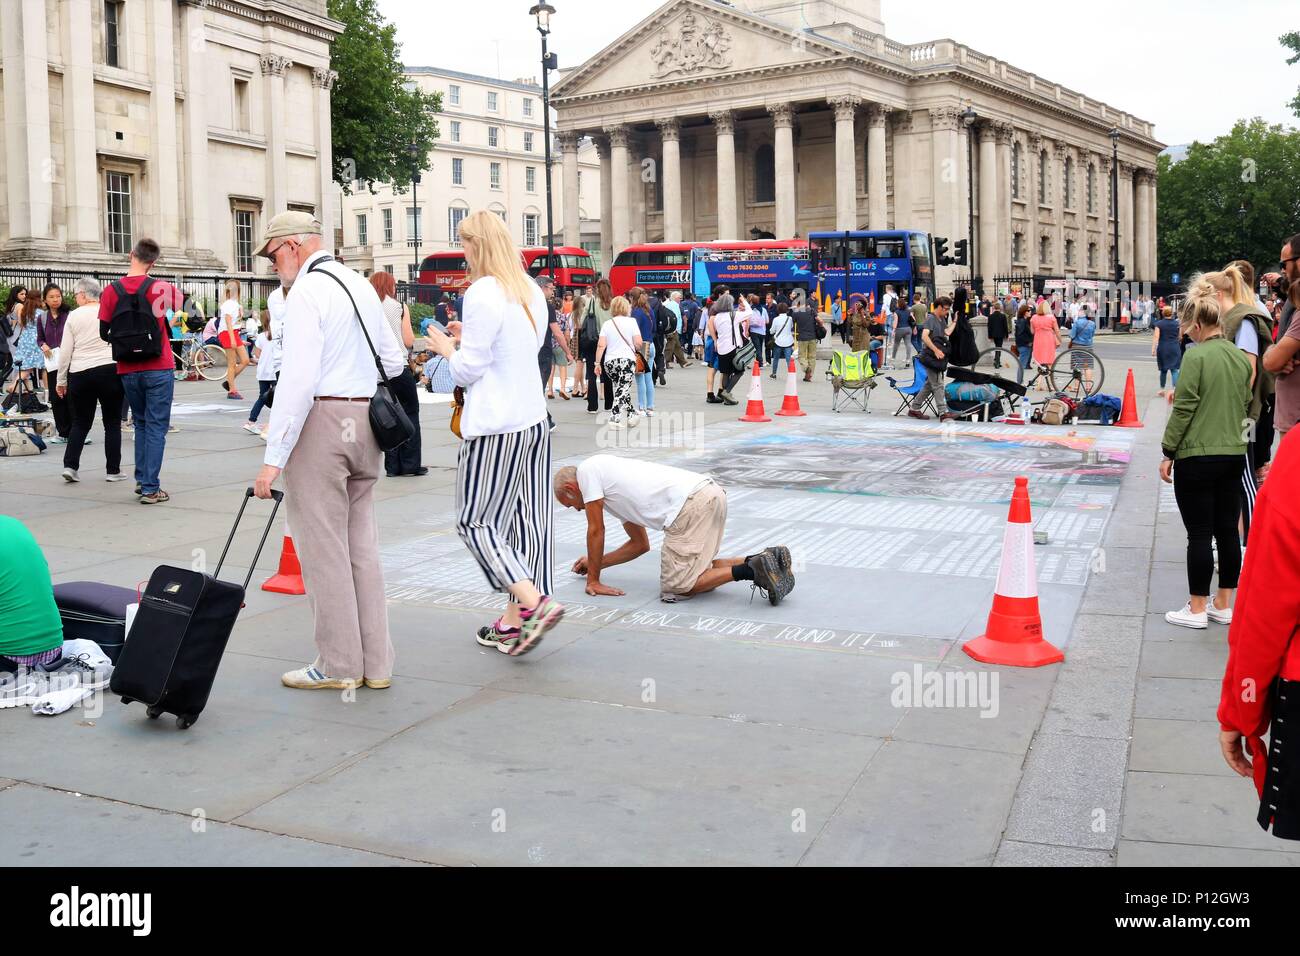 Les personnes bénéficiant du beau temps à Trafalgar Square, Londres, UK Banque D'Images